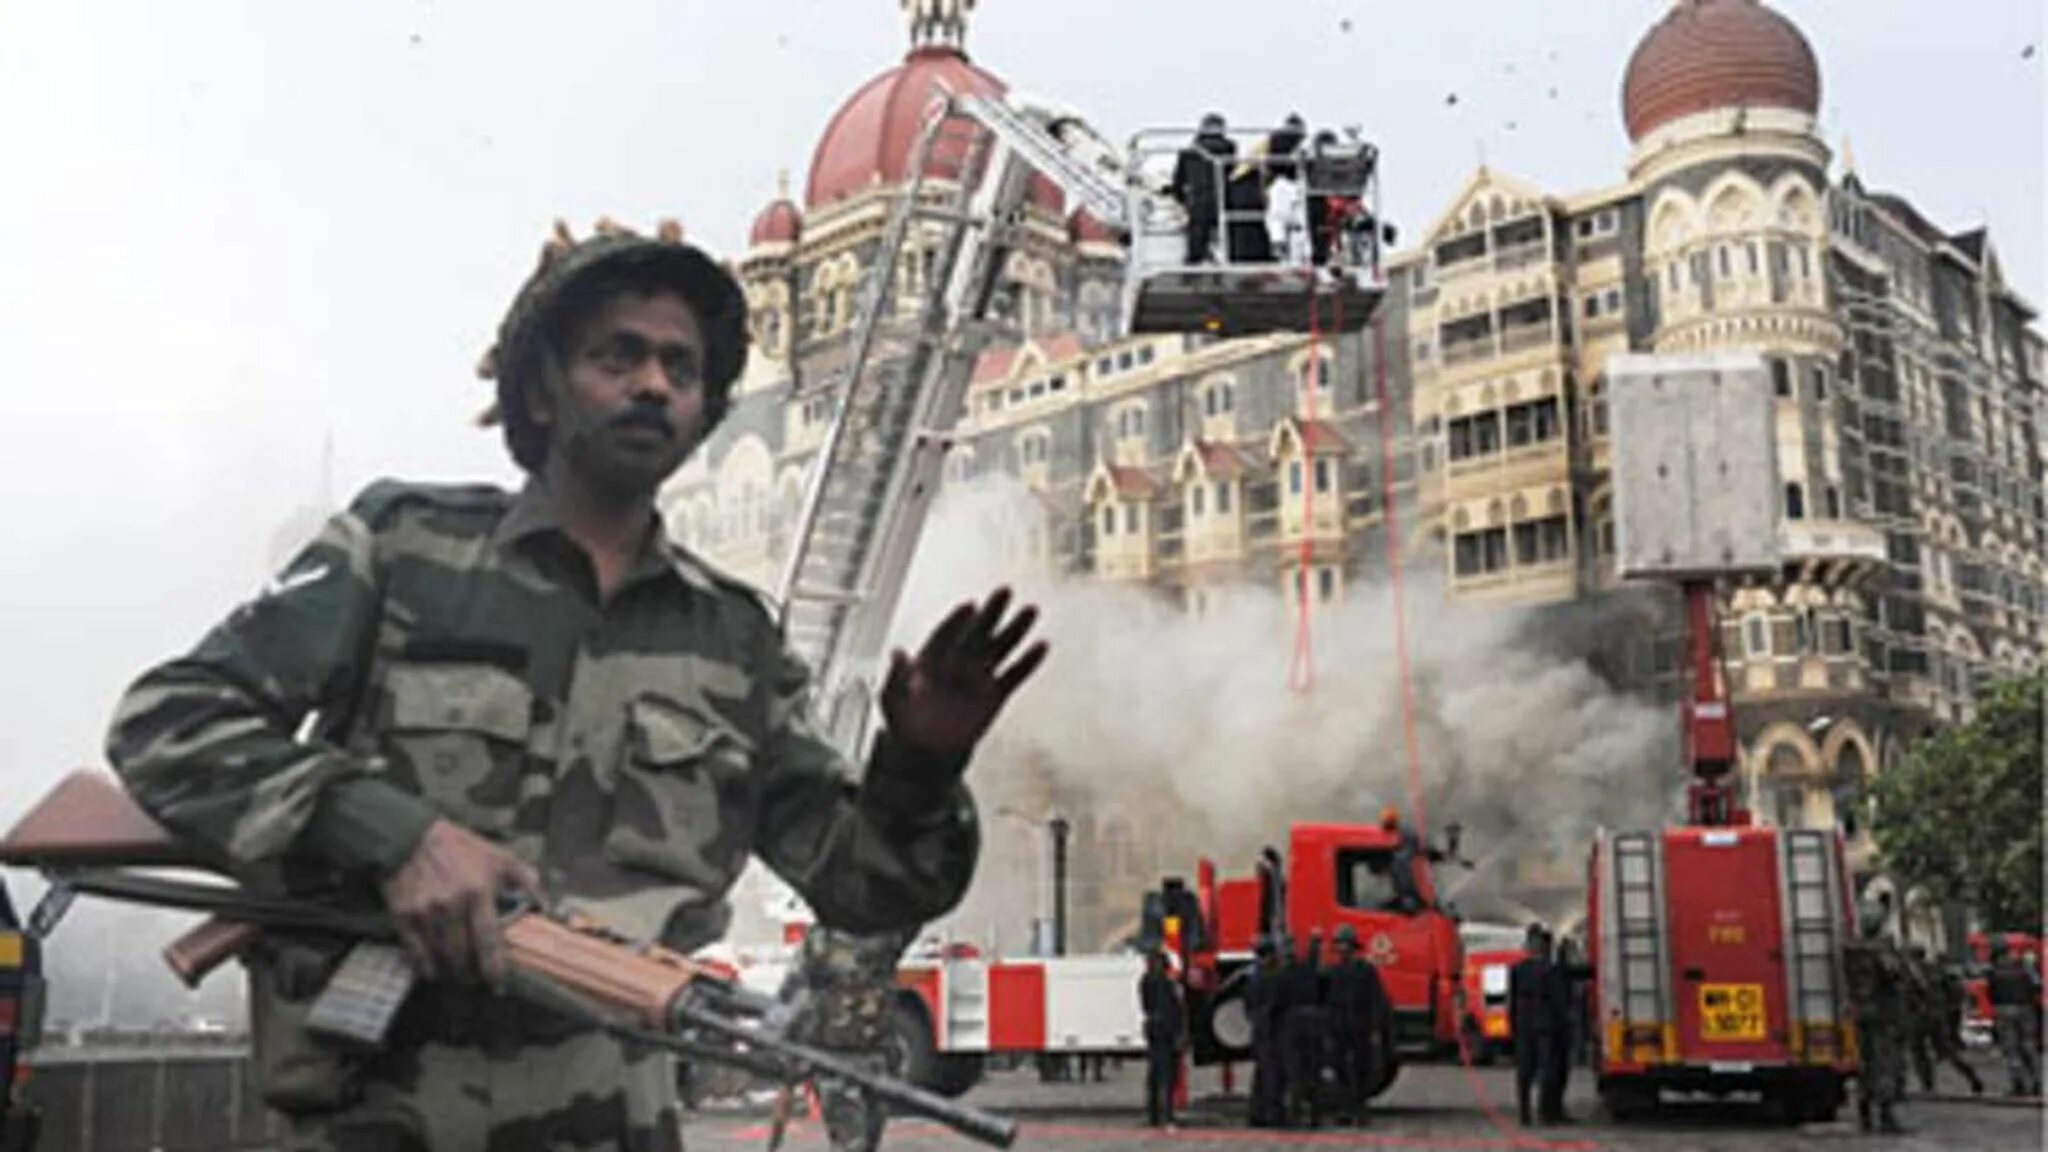 Мумбаи 2008 Тадж Махал теракт. Отель Мумбаи теракт 2008. Теракт в Индии 2008 Тадж Махал. Теракт в Индии 2008 отель Тадж Махал. 10 ноября 2008